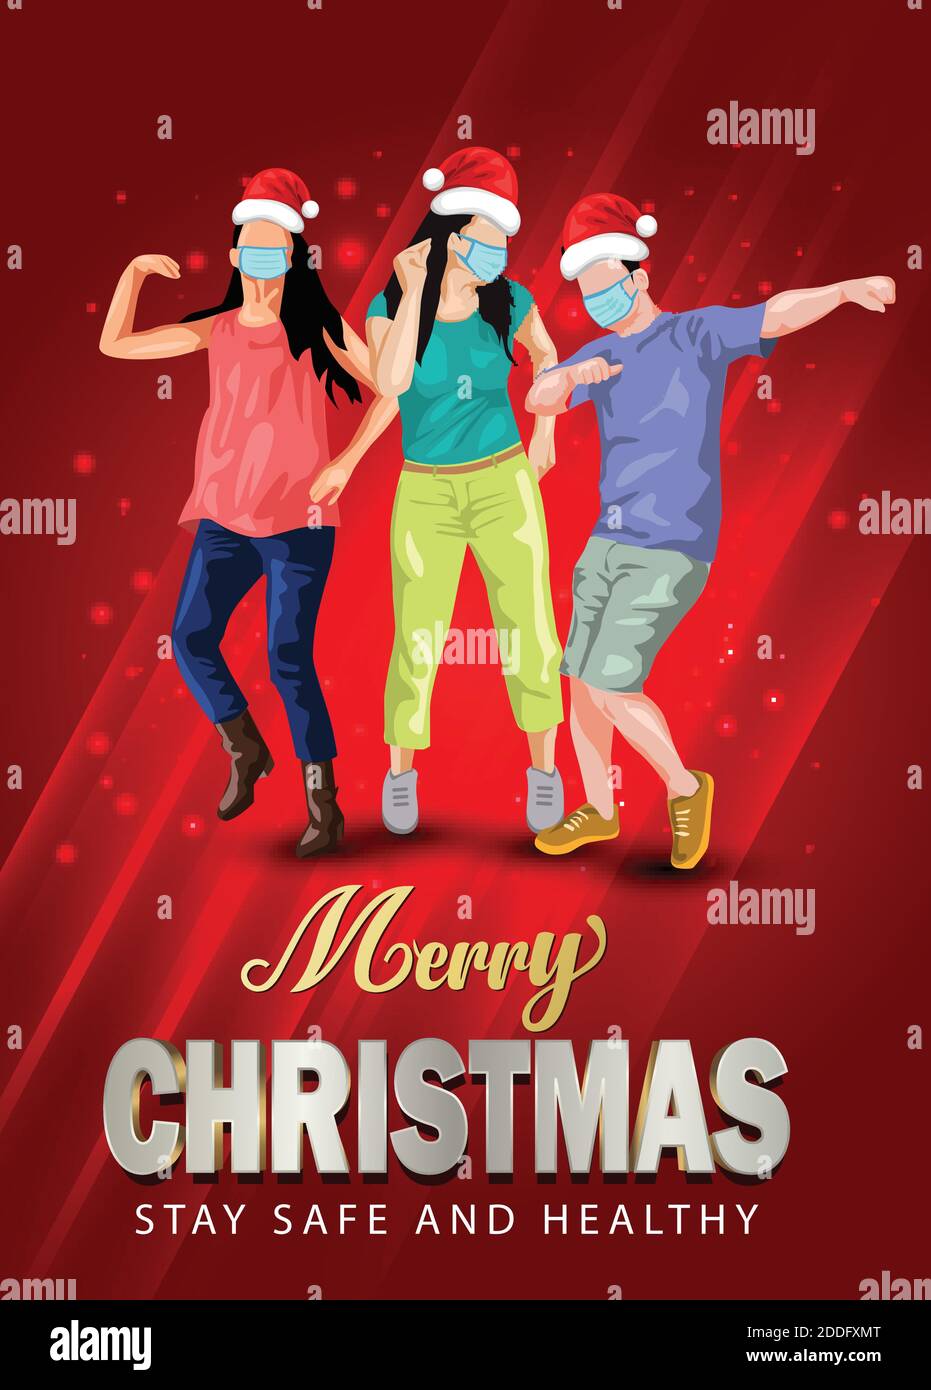 Merry christmas Dance Night Party Flyer Design mit Gruppe von Menschen tanzen mit santa Hand und tragen chirurgische Maske. Coronavirus, covid-19 Konzept. Stock Vektor